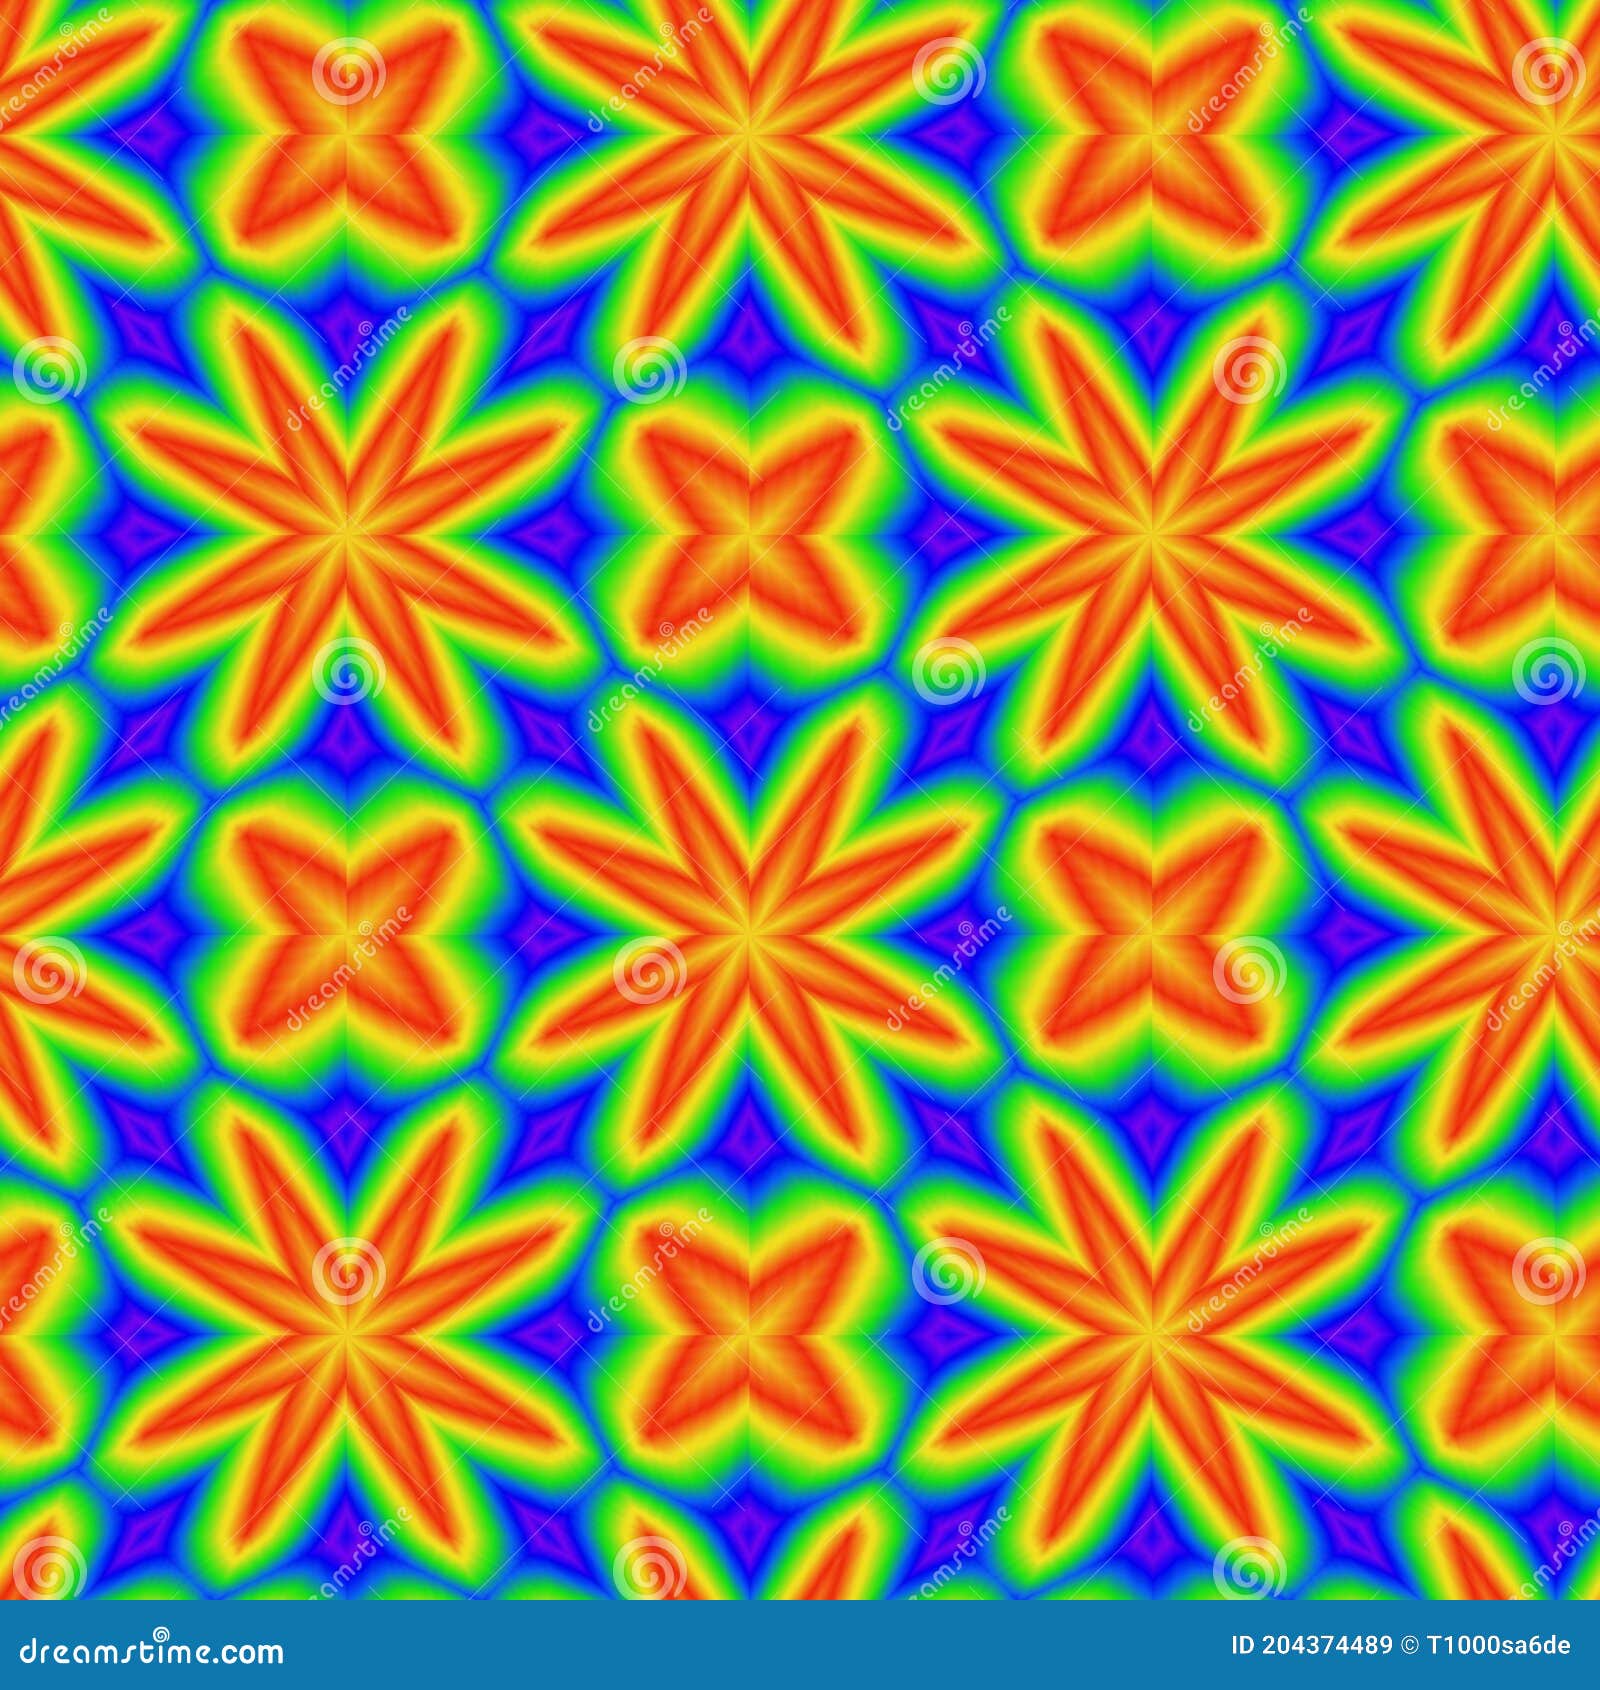 Repetición De Patrones Simétricos Coloridos Para Los Fondos De Pantalla Y Modelos  De Azulejos De Cerámica De Los Textiles. Stock de ilustración - Ilustración  de brocado, concepto: 204374489